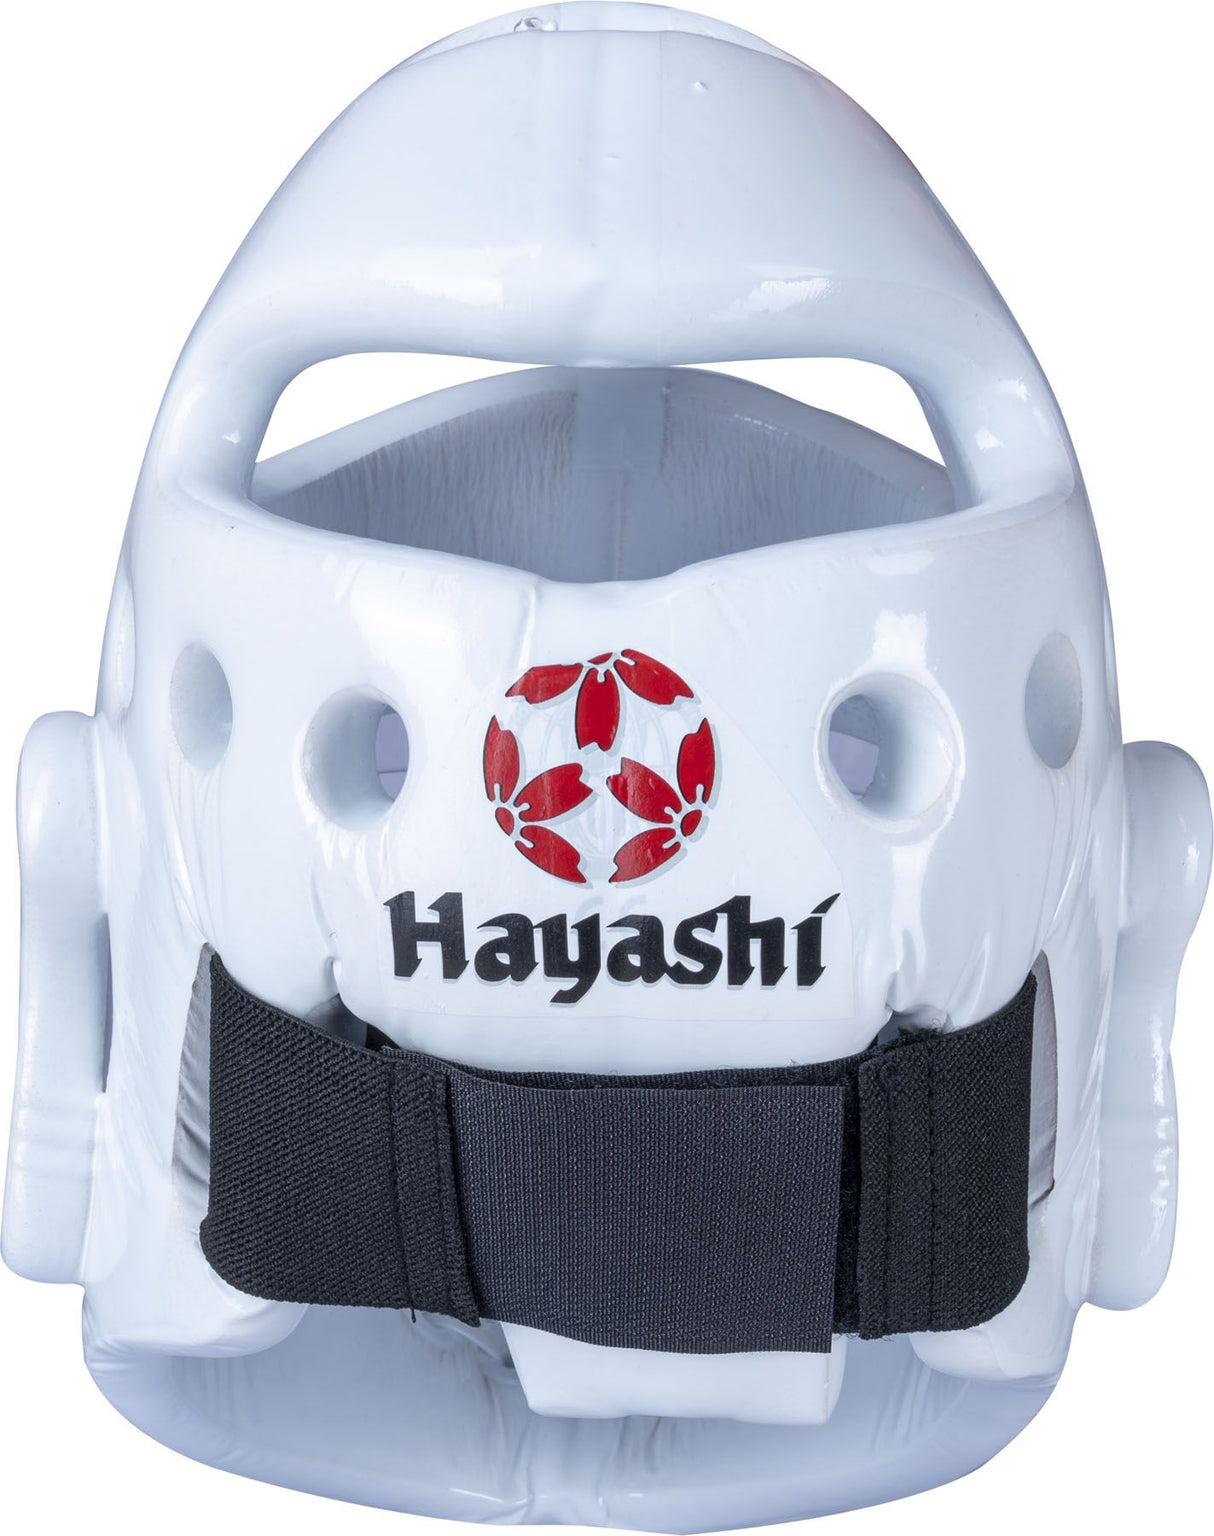 Hayashi Kopfschutz WKF mit Maske - weiß